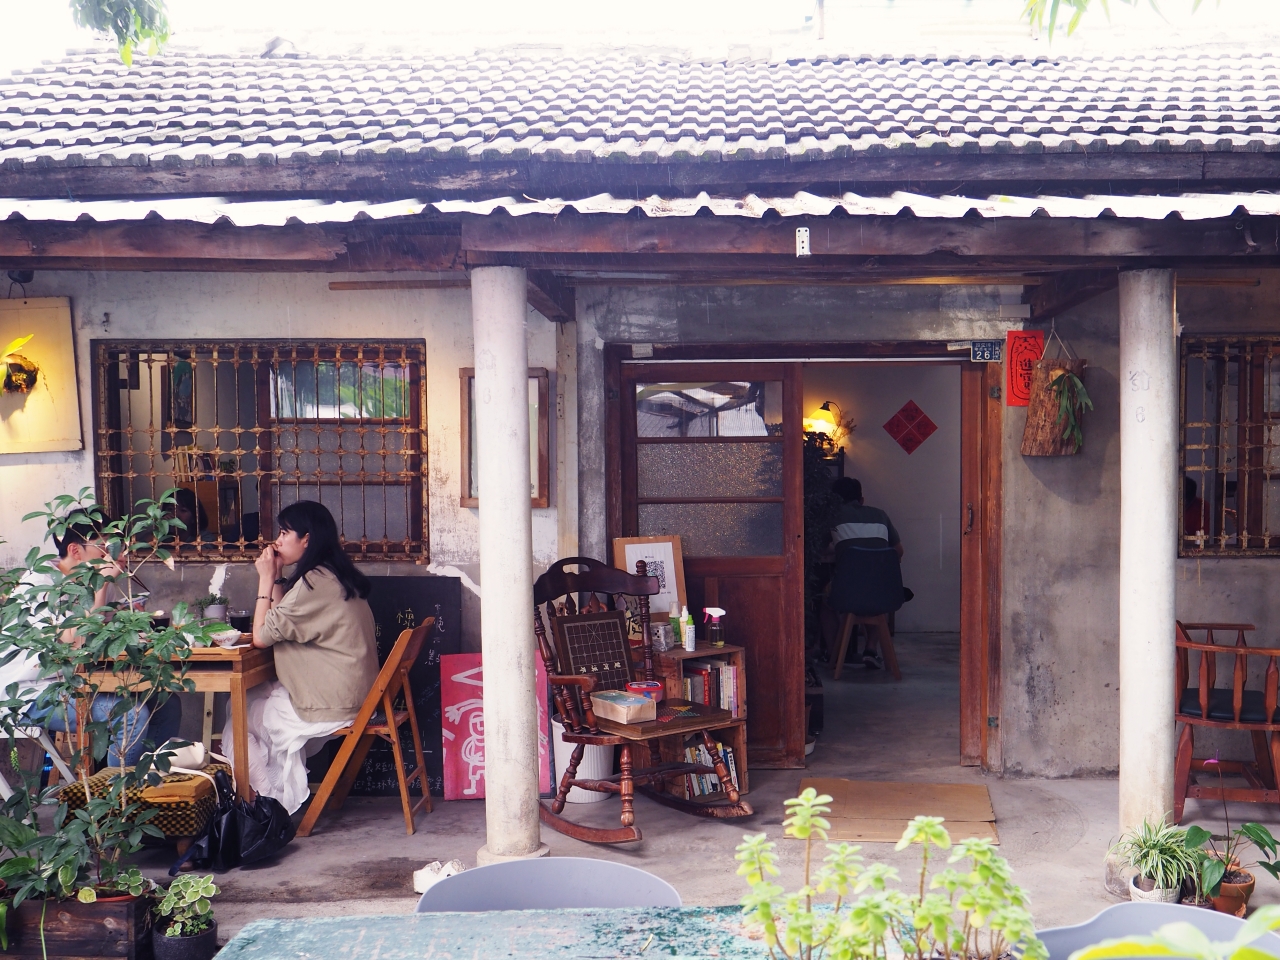 台東市美食｜橋Chiao，擁有大院子的老宅餐廳  自家栽種稻米結合台東在地食材 @台客X文青的夫婦日常